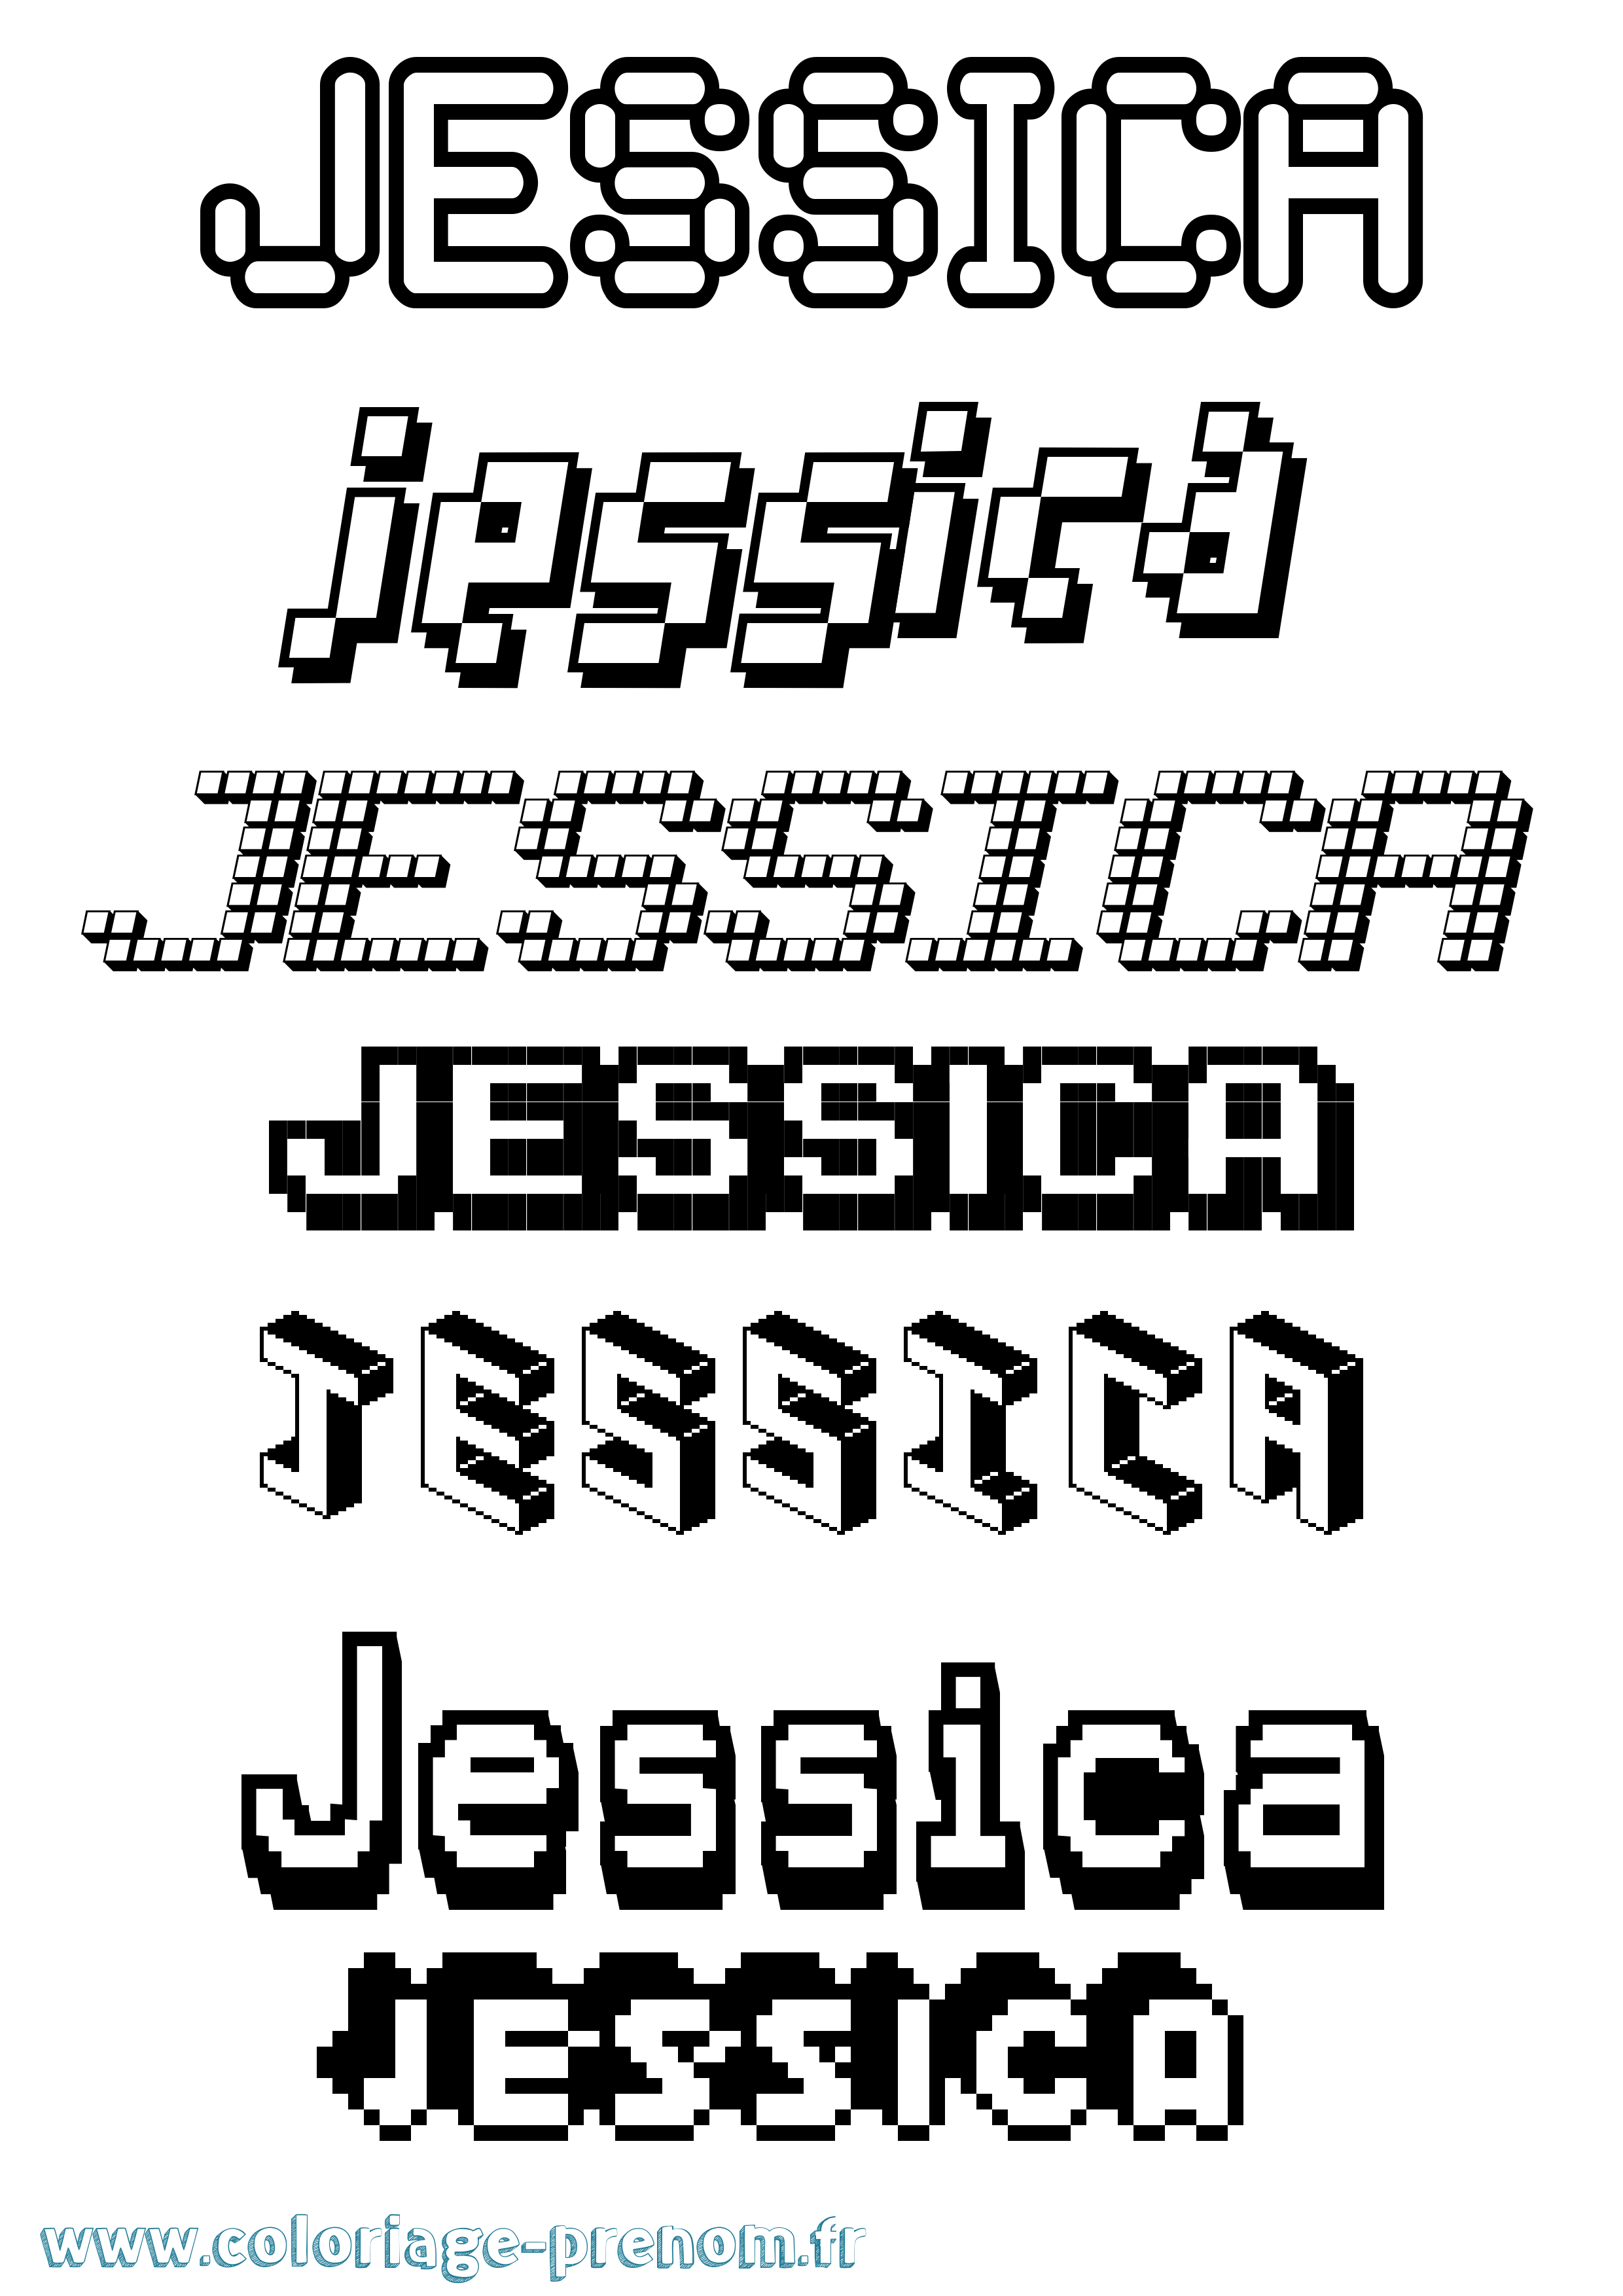 Coloriage prénom Jessica Pixel